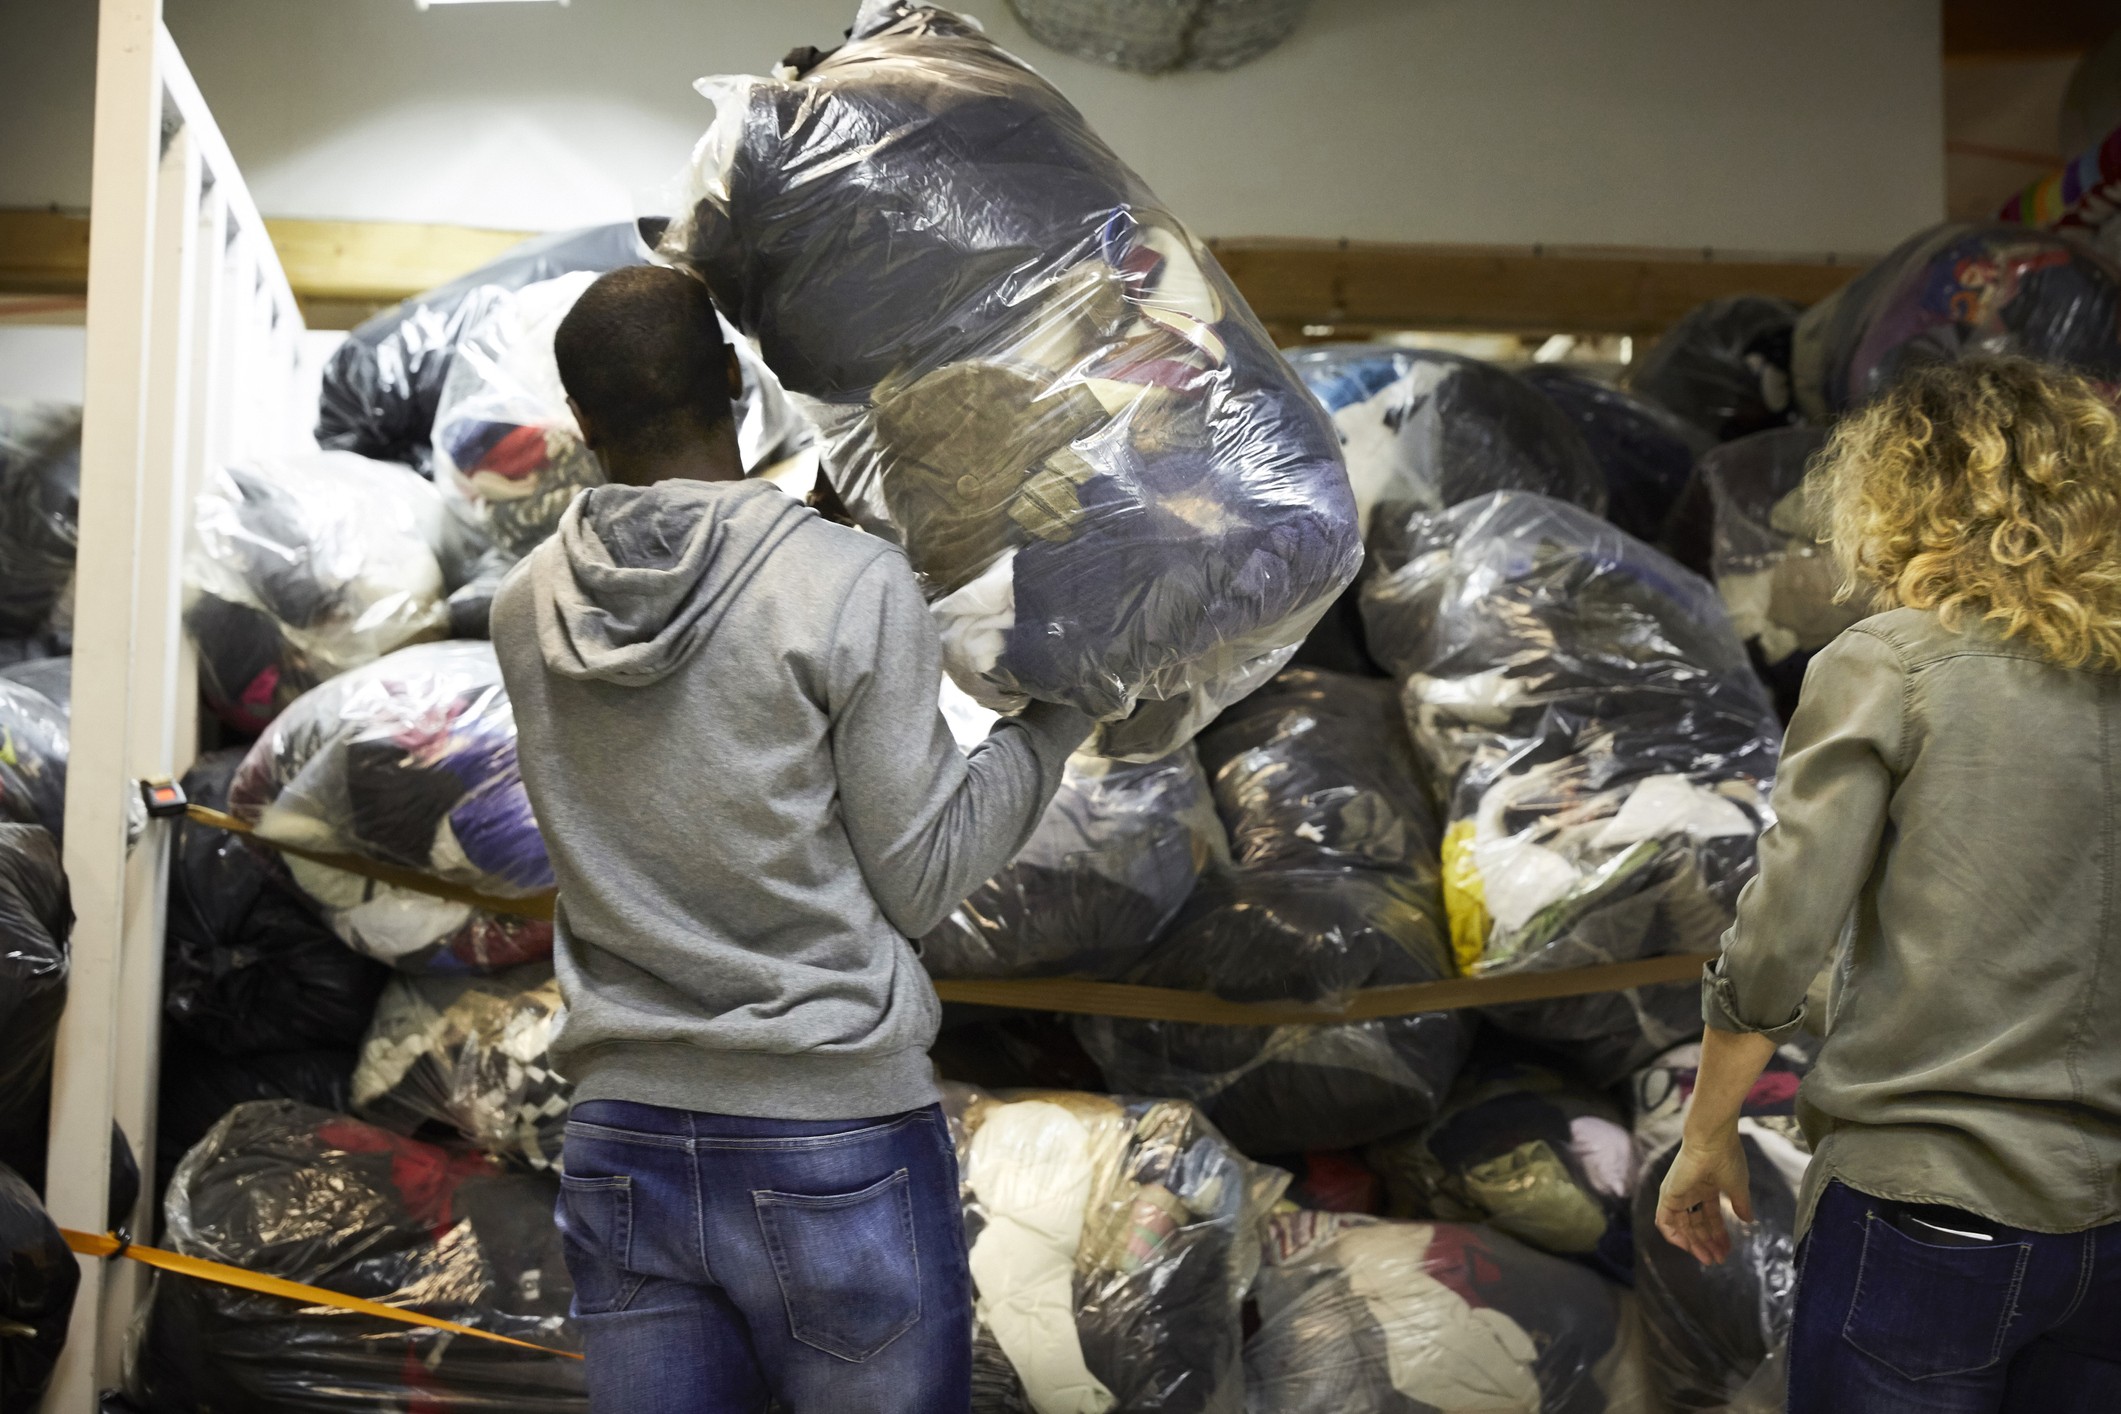 Voluntários separam roupas doadas para serem distribuídas (Foto: Getty Images)